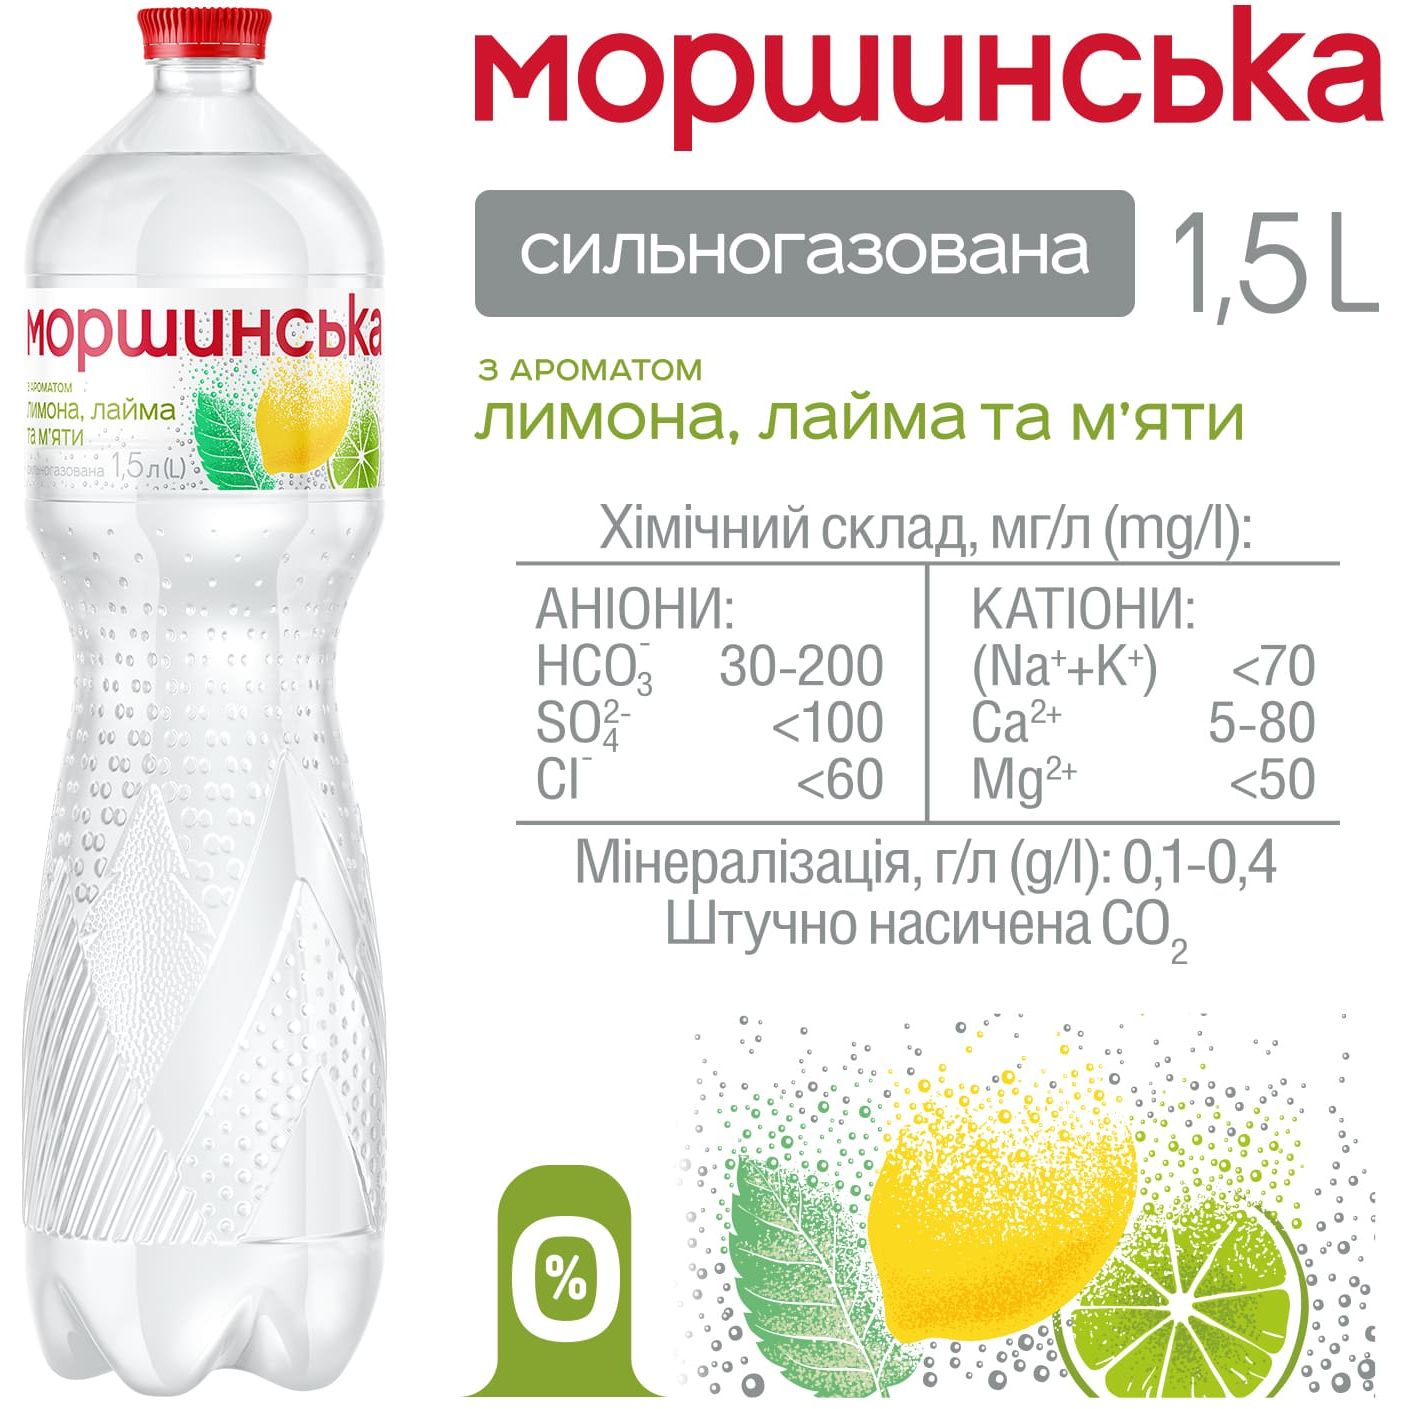 Напій Моршинська з ароматом лимона, лайма та м'яти сильногазований 1.5 л - фото 3